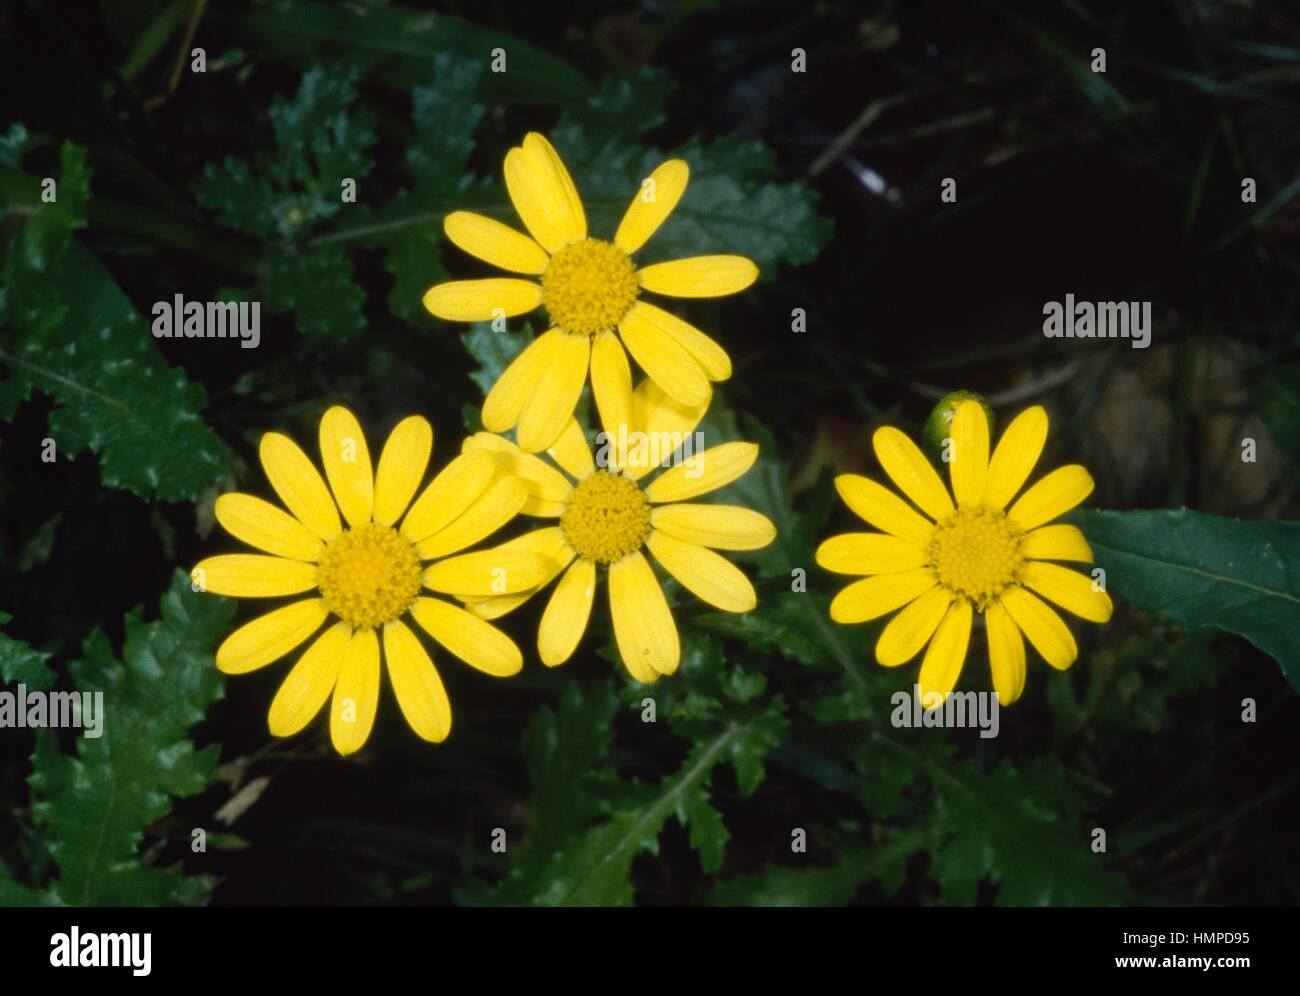 Rock Ragwort (Senecio rupestris or Senecio squalidus rupestris), Asteraceae. Stock Photo